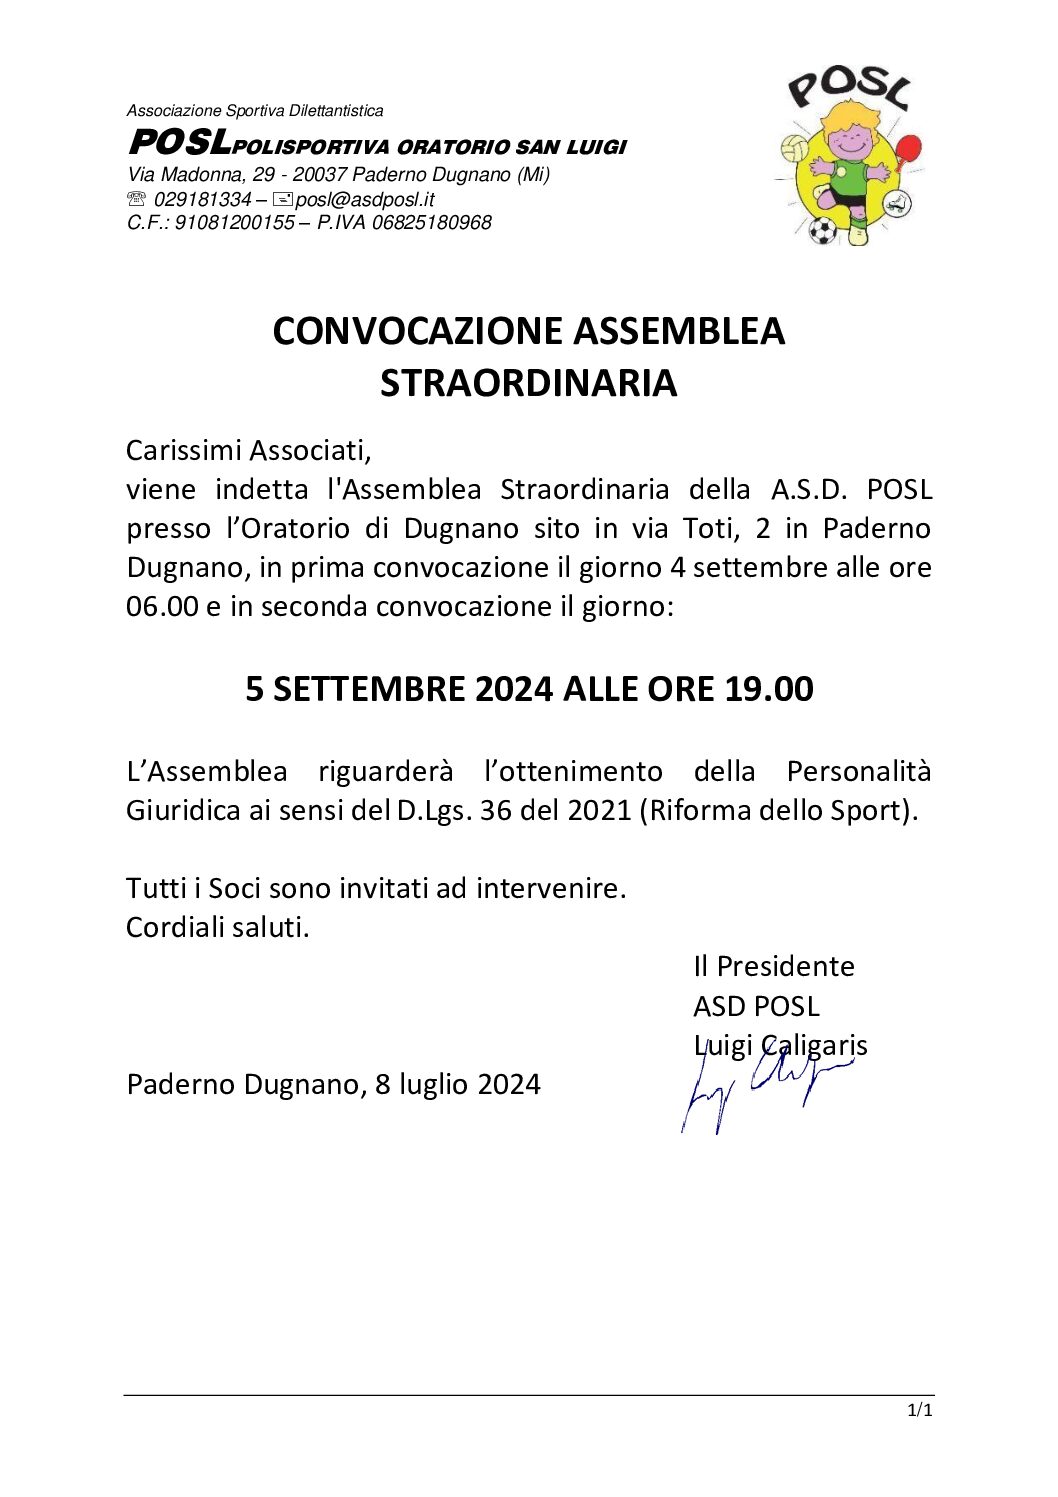 5 settembre 2024: Convocazione Assemblea Straordinaria per l’ottenimento della personalità giuridica